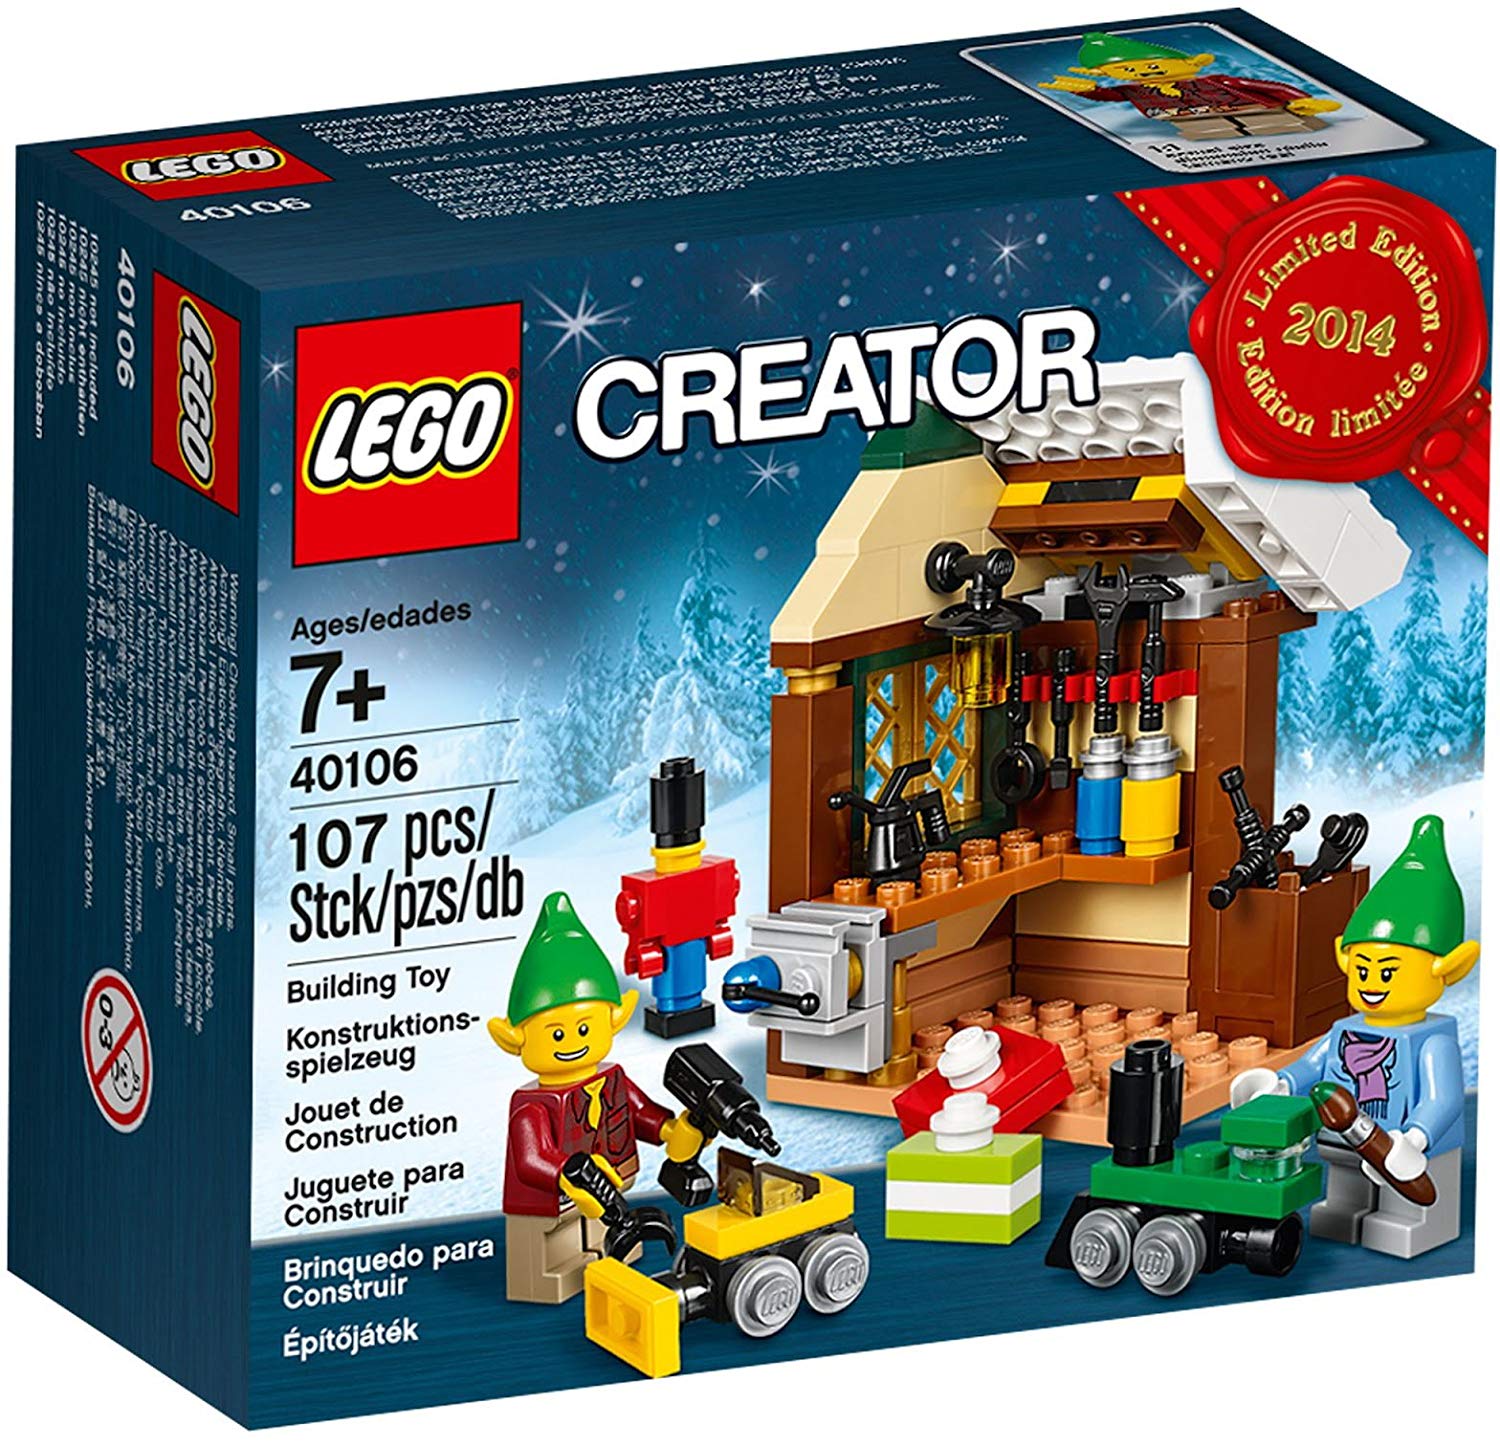 Lego Creator Toy Workshop Box Set 40106 2014 Limited Edition